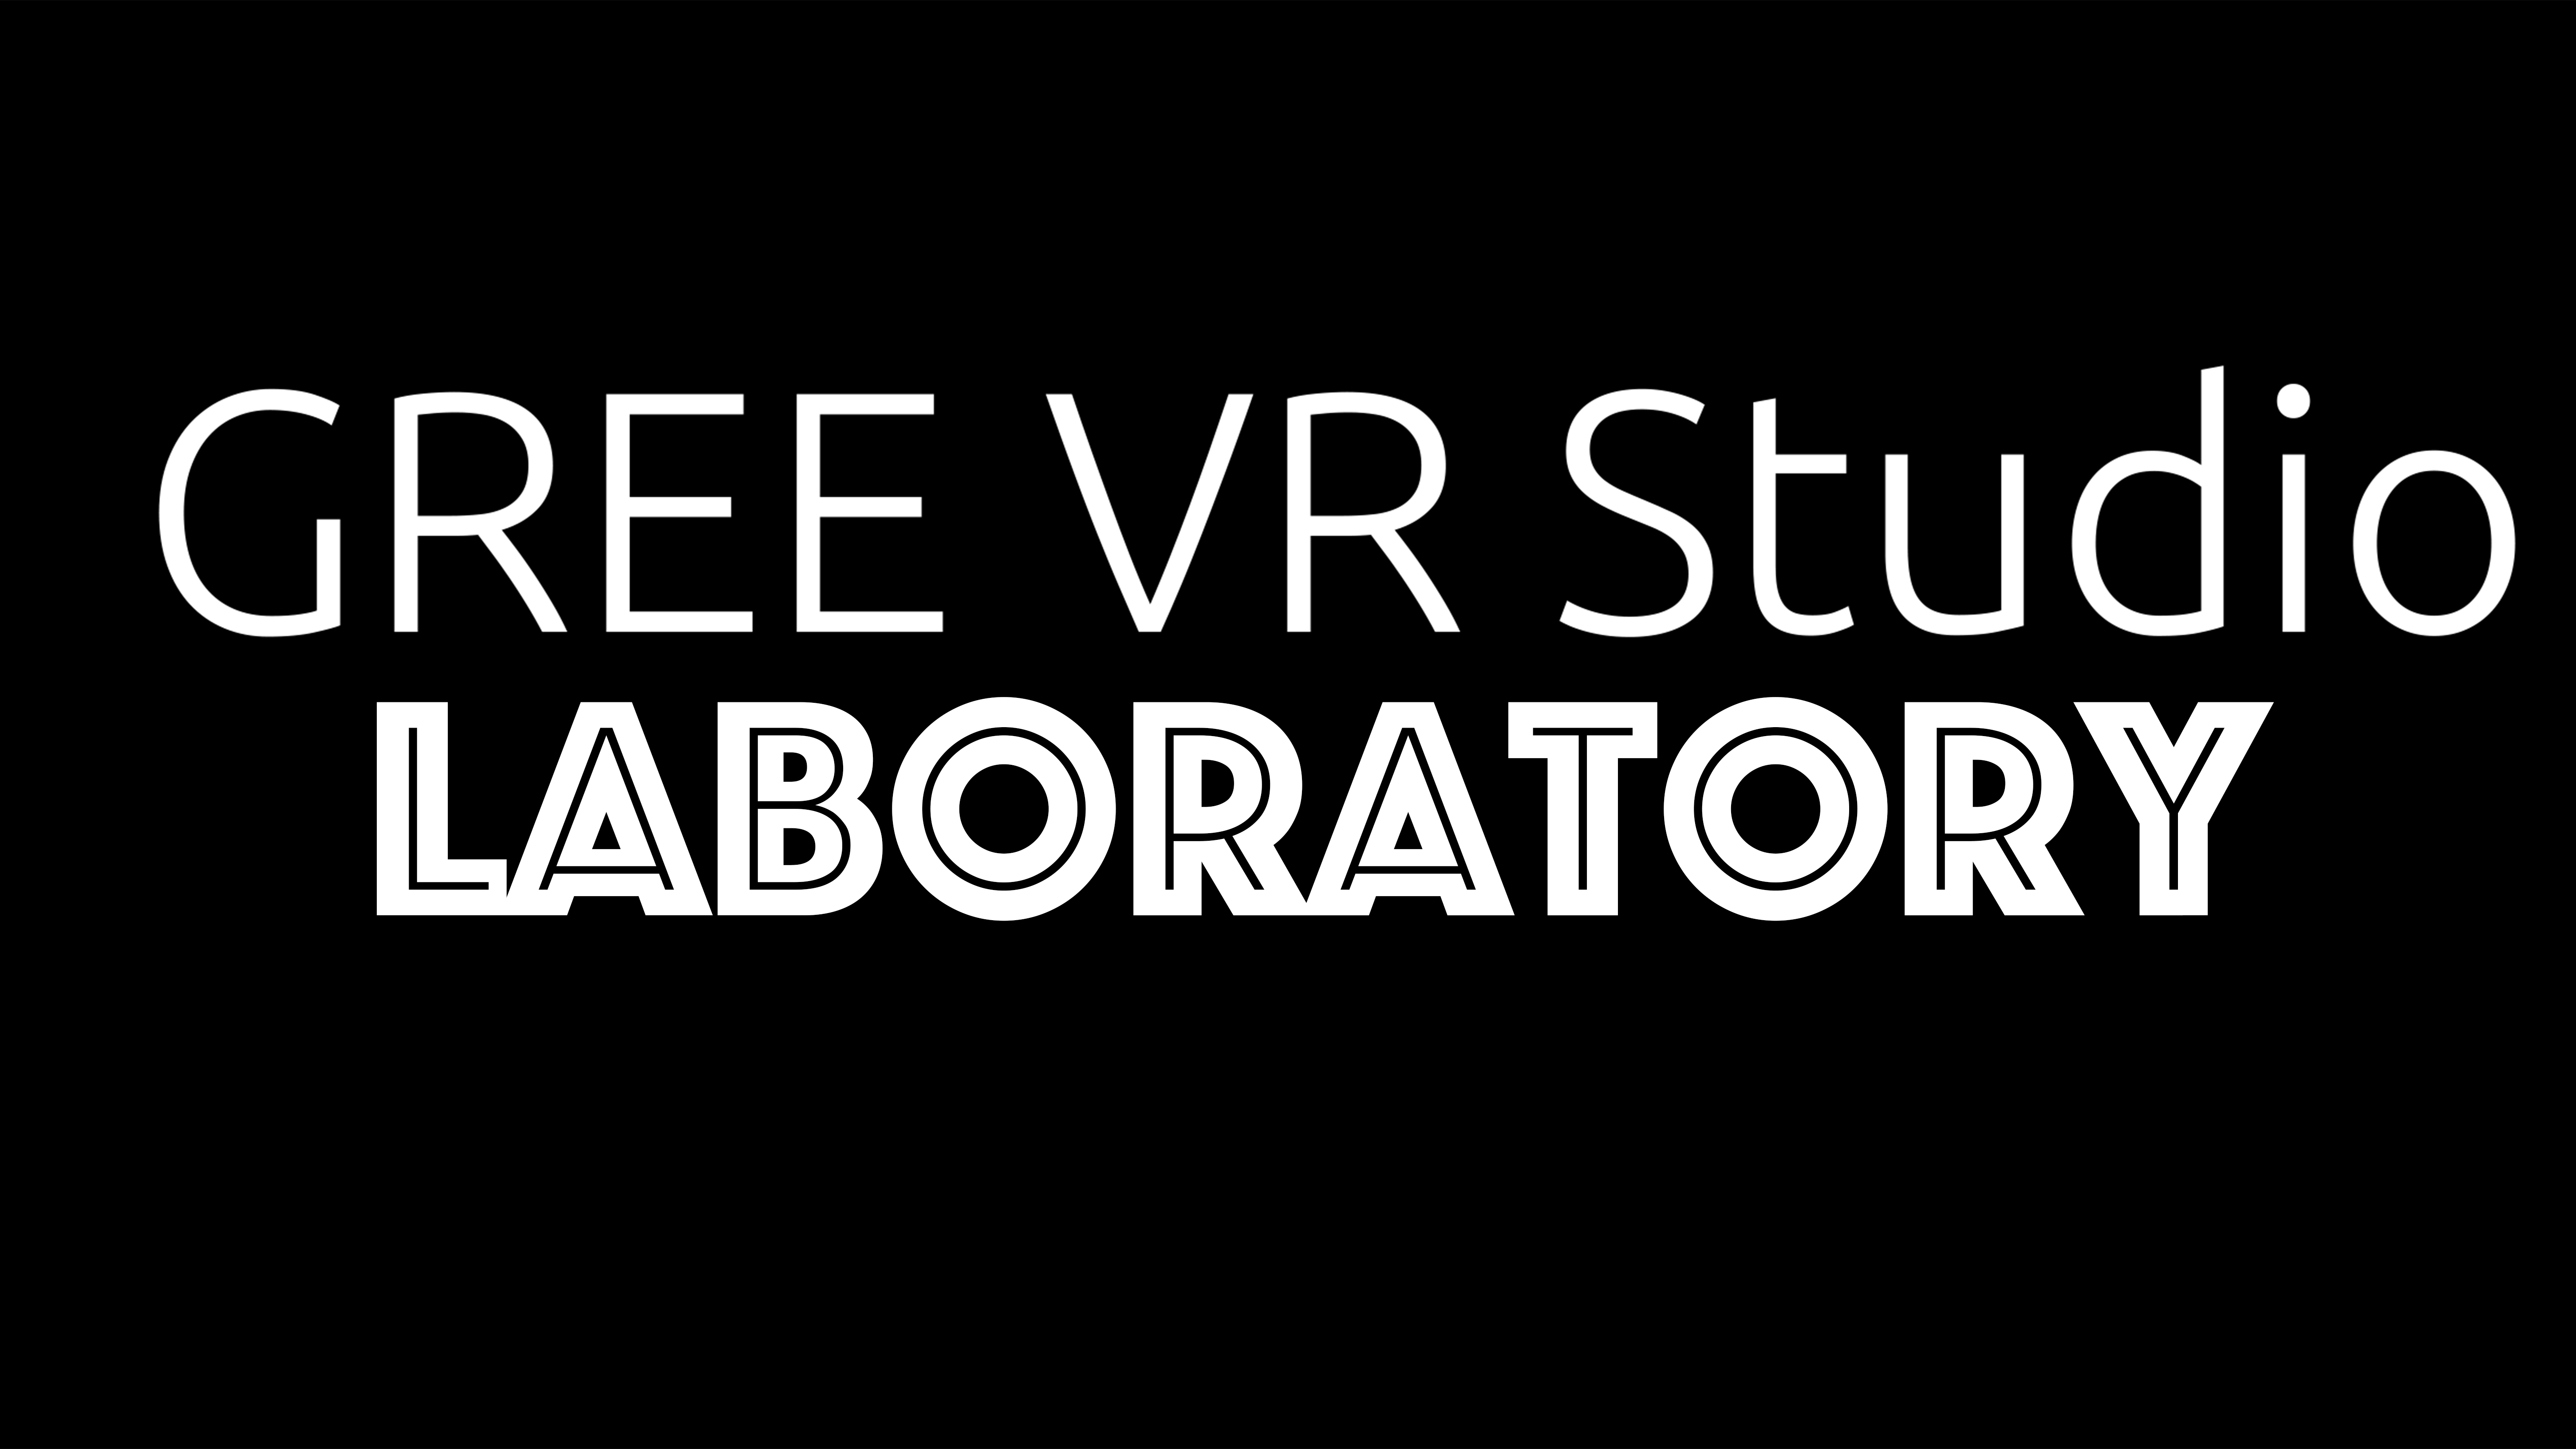 GREE VR Studio Laboratory